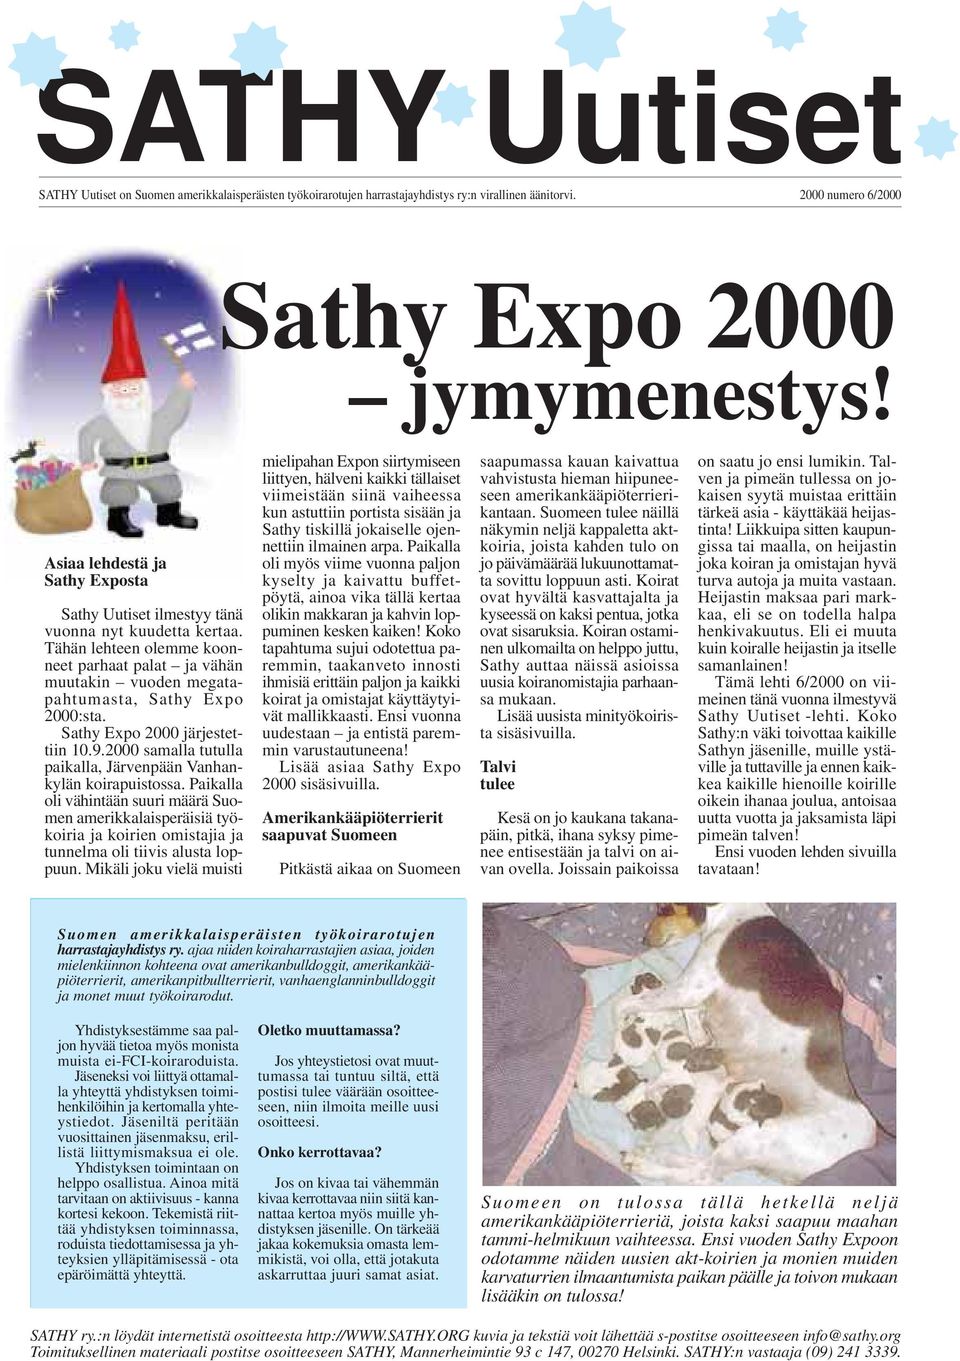 Sathy Expo 2000 järjestettiin 10.9.2000 samalla tutulla paikalla, Järvenpään Vanhankylän koirapuistossa.